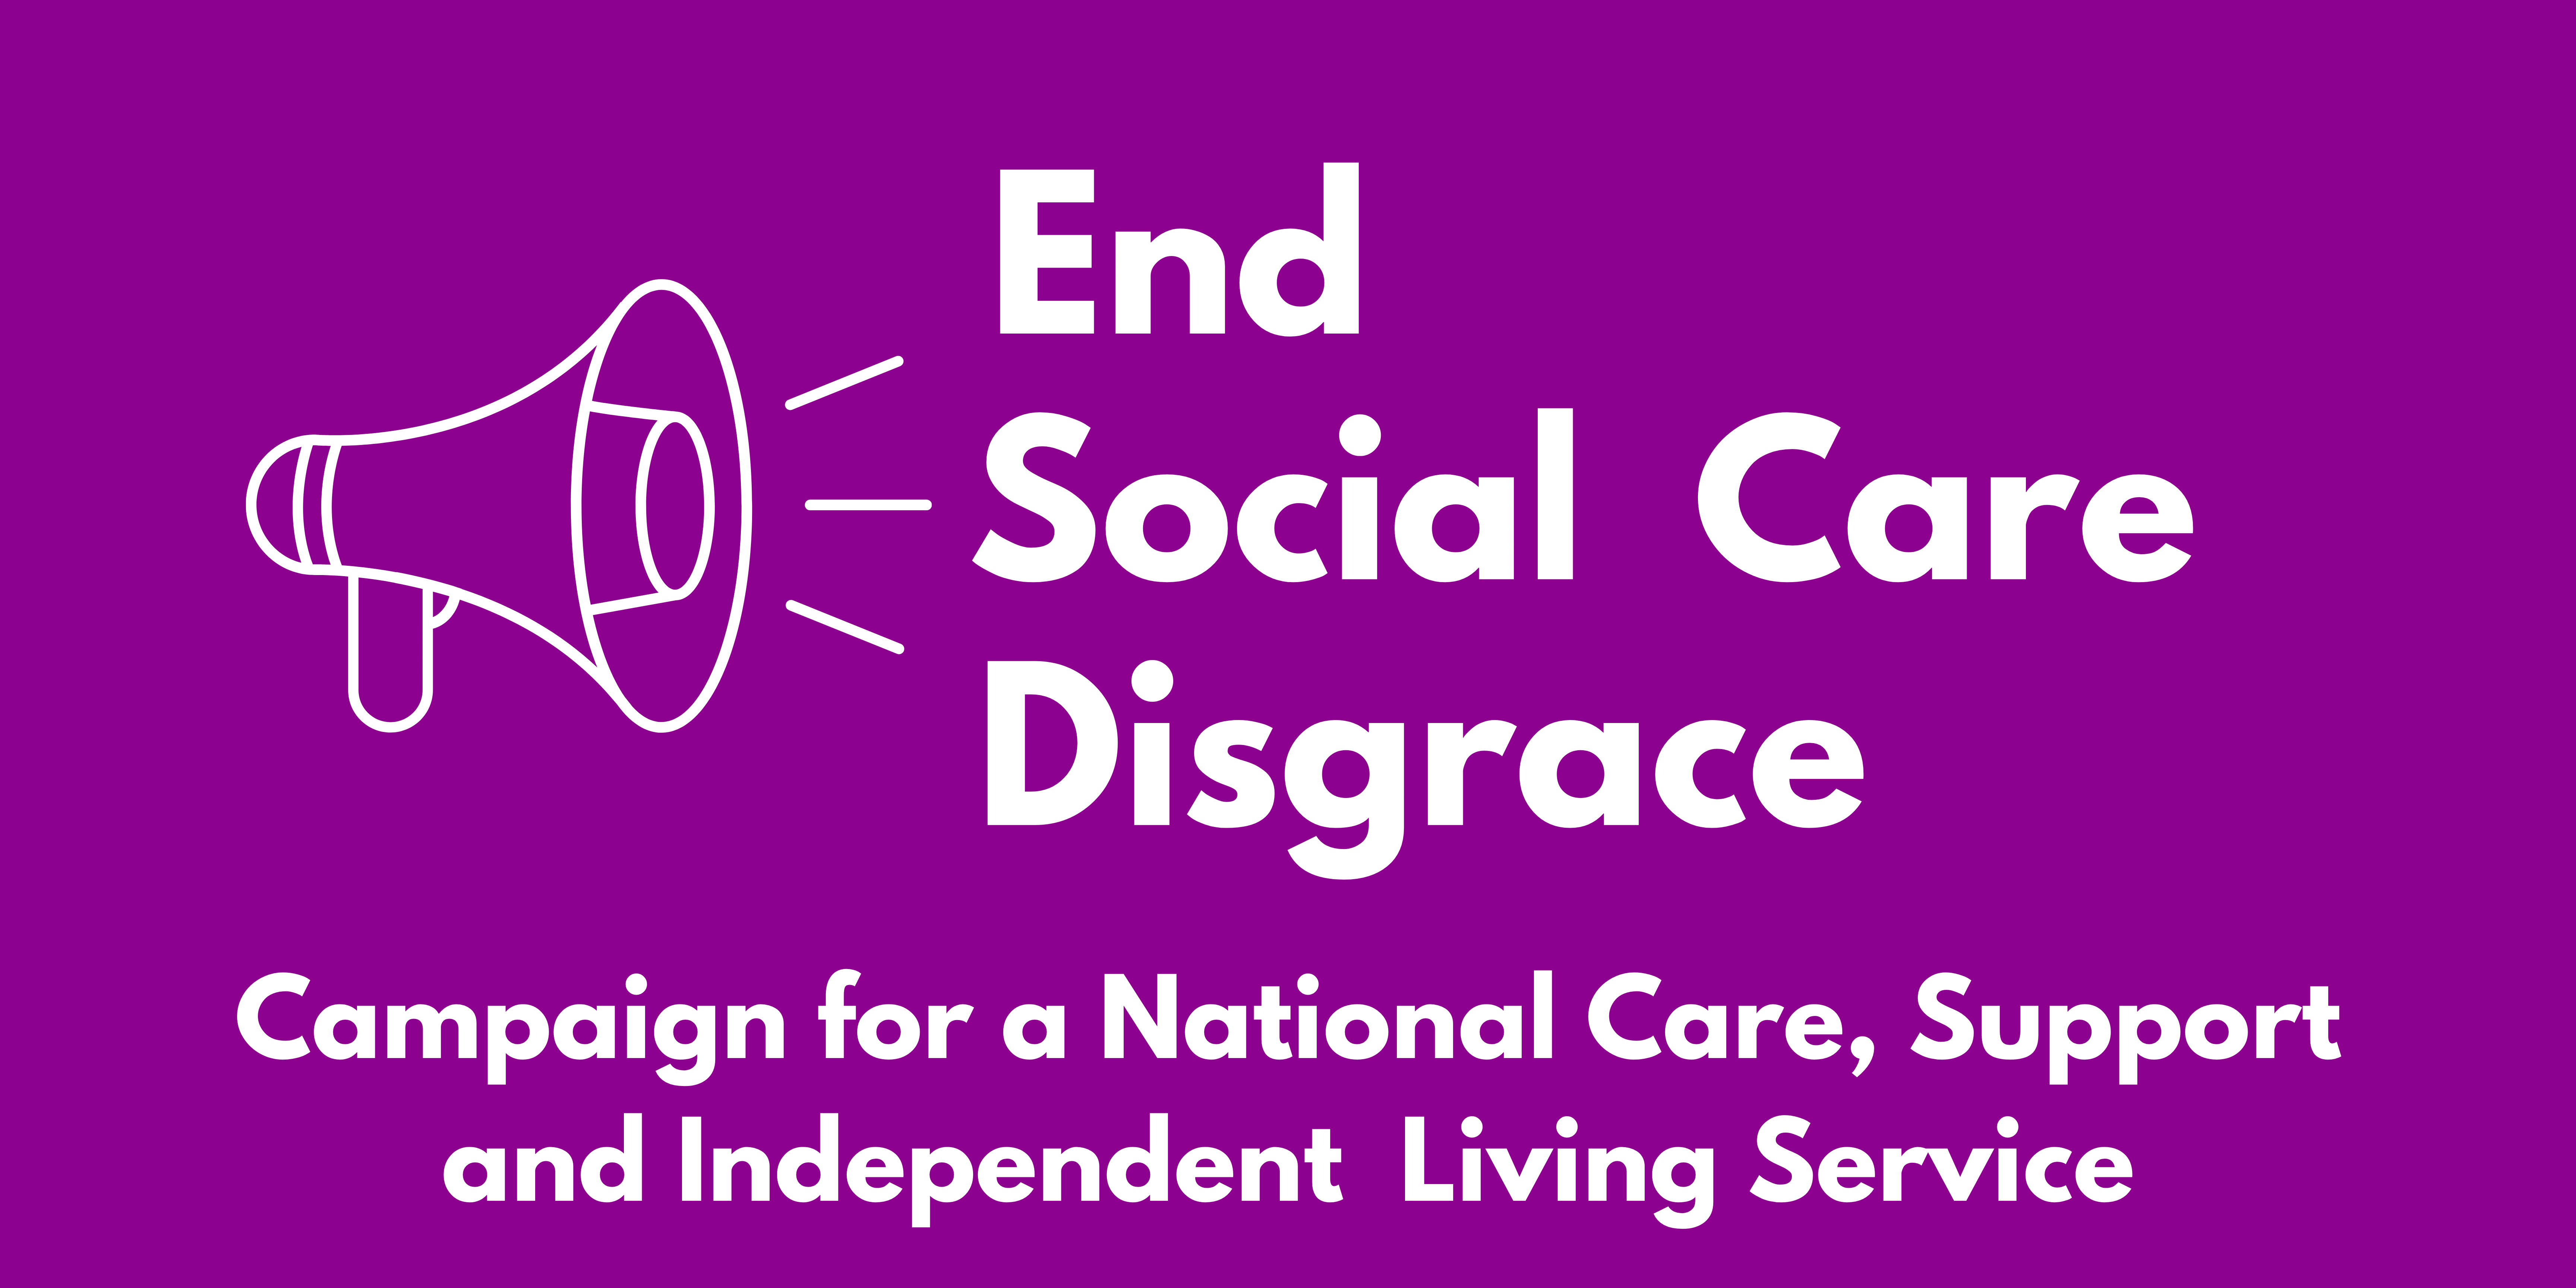 End Social Care Disgrace